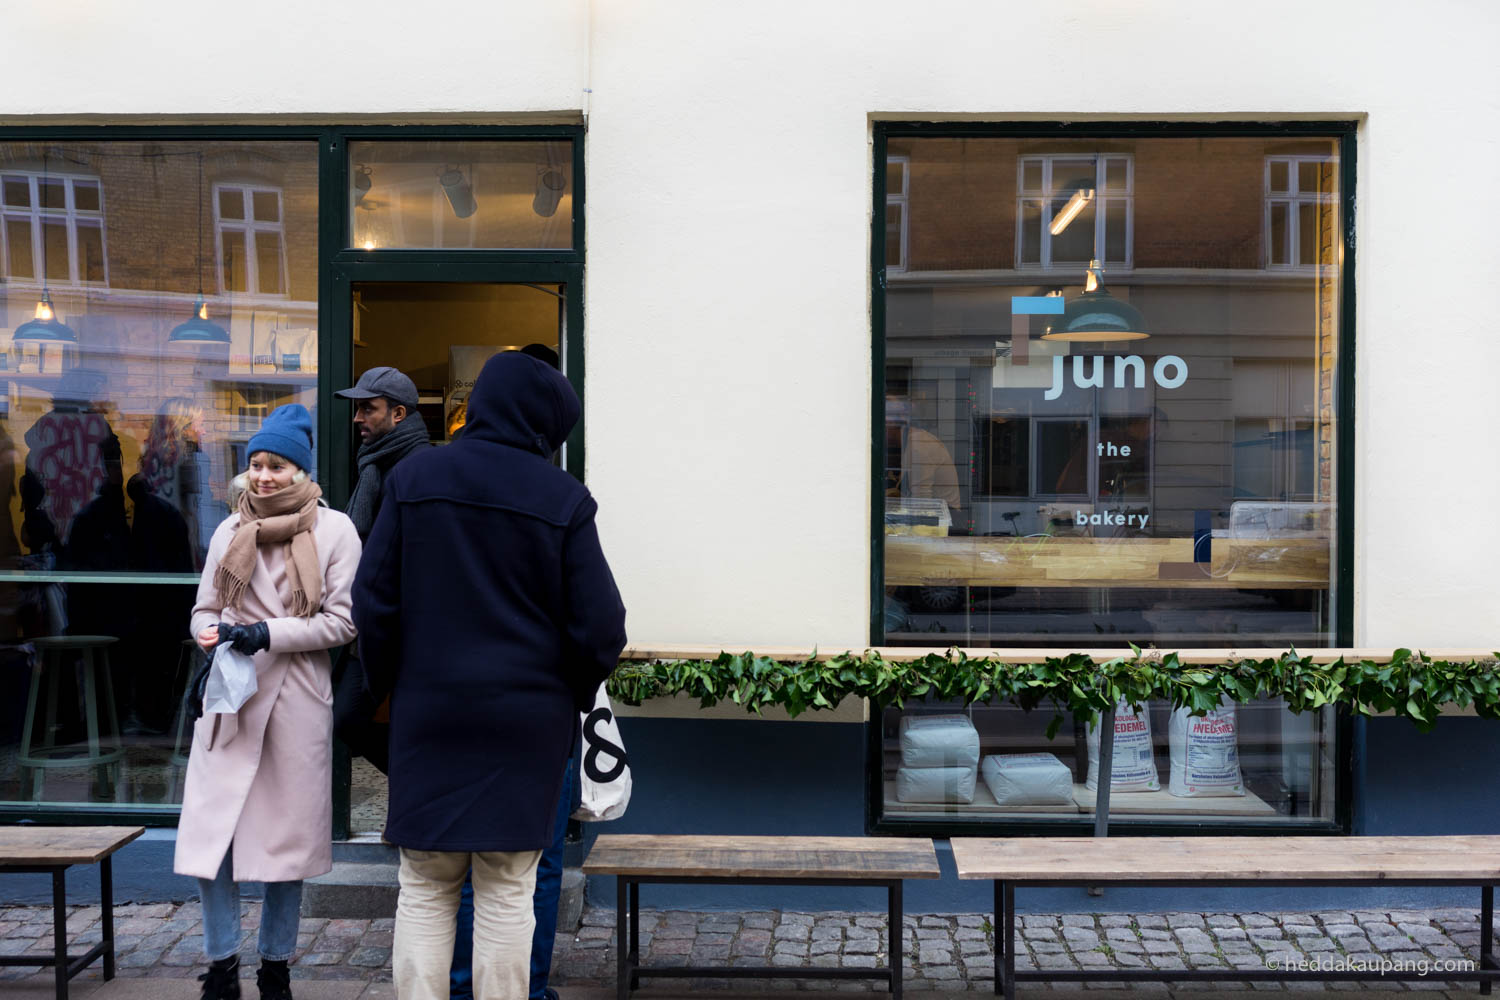 Juno the bakery